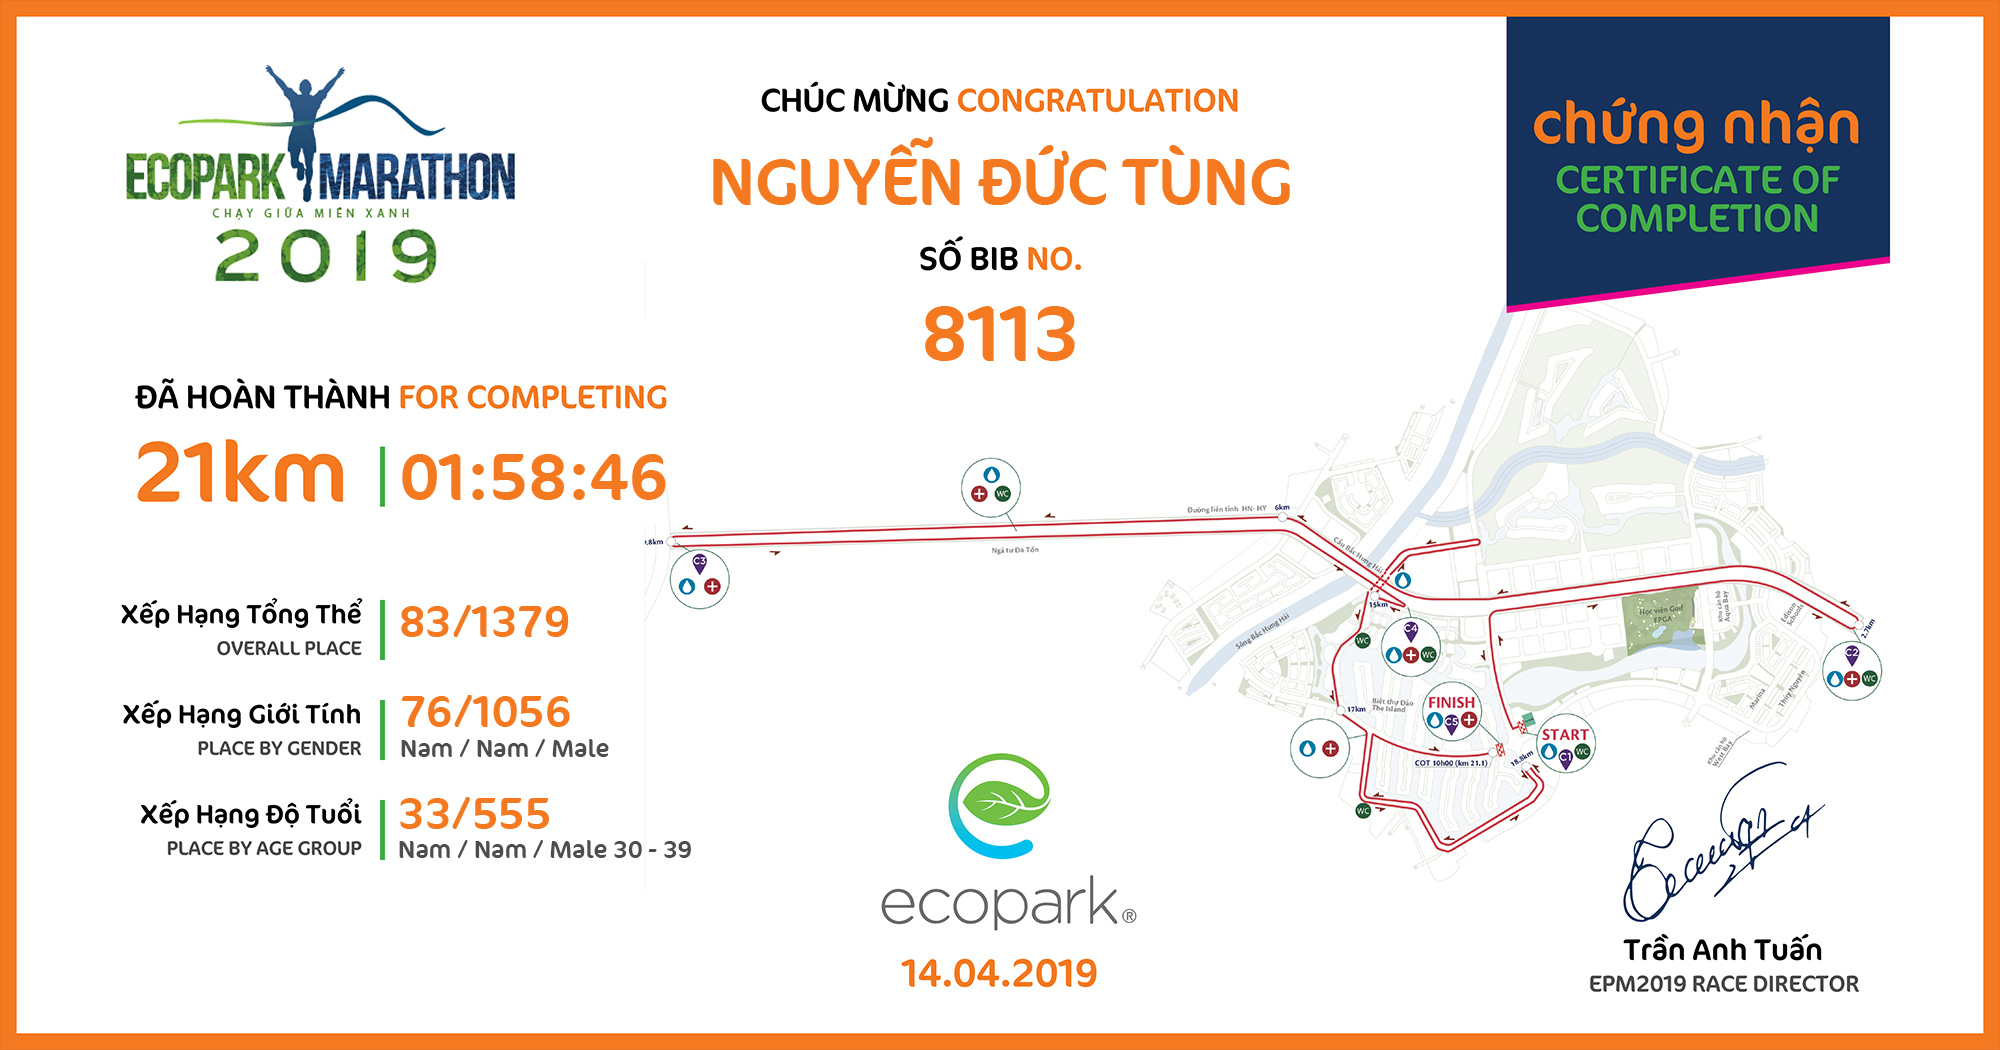 8113 - Nguyễn Đức Tùng